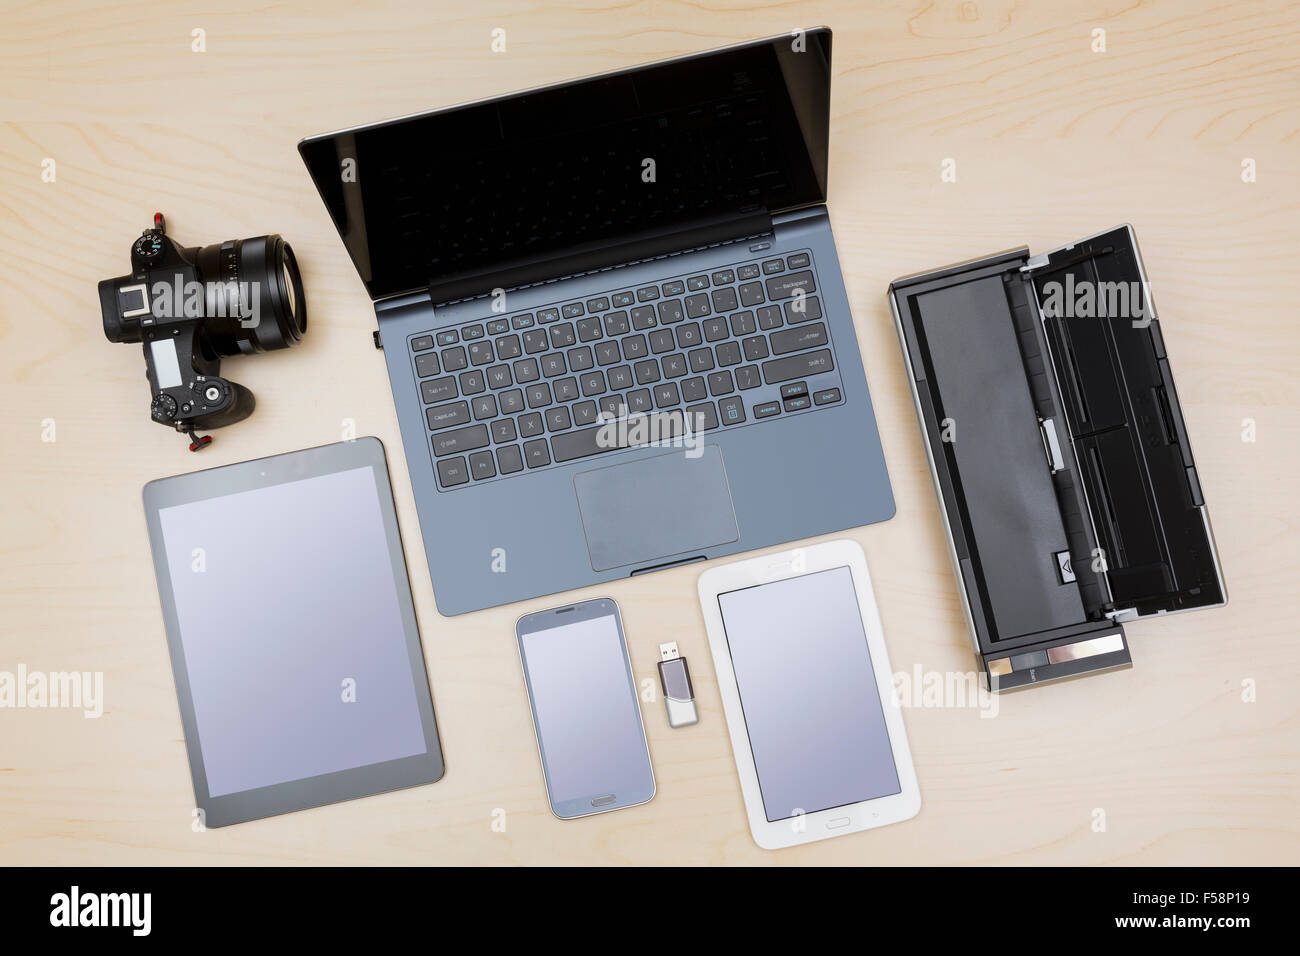 Vue supérieure de l'équipement numérique, appareils ou gadgets - portable, ordinateur portable, appareil photo, tablette, téléphone, scanner sur un bureau Banque D'Images